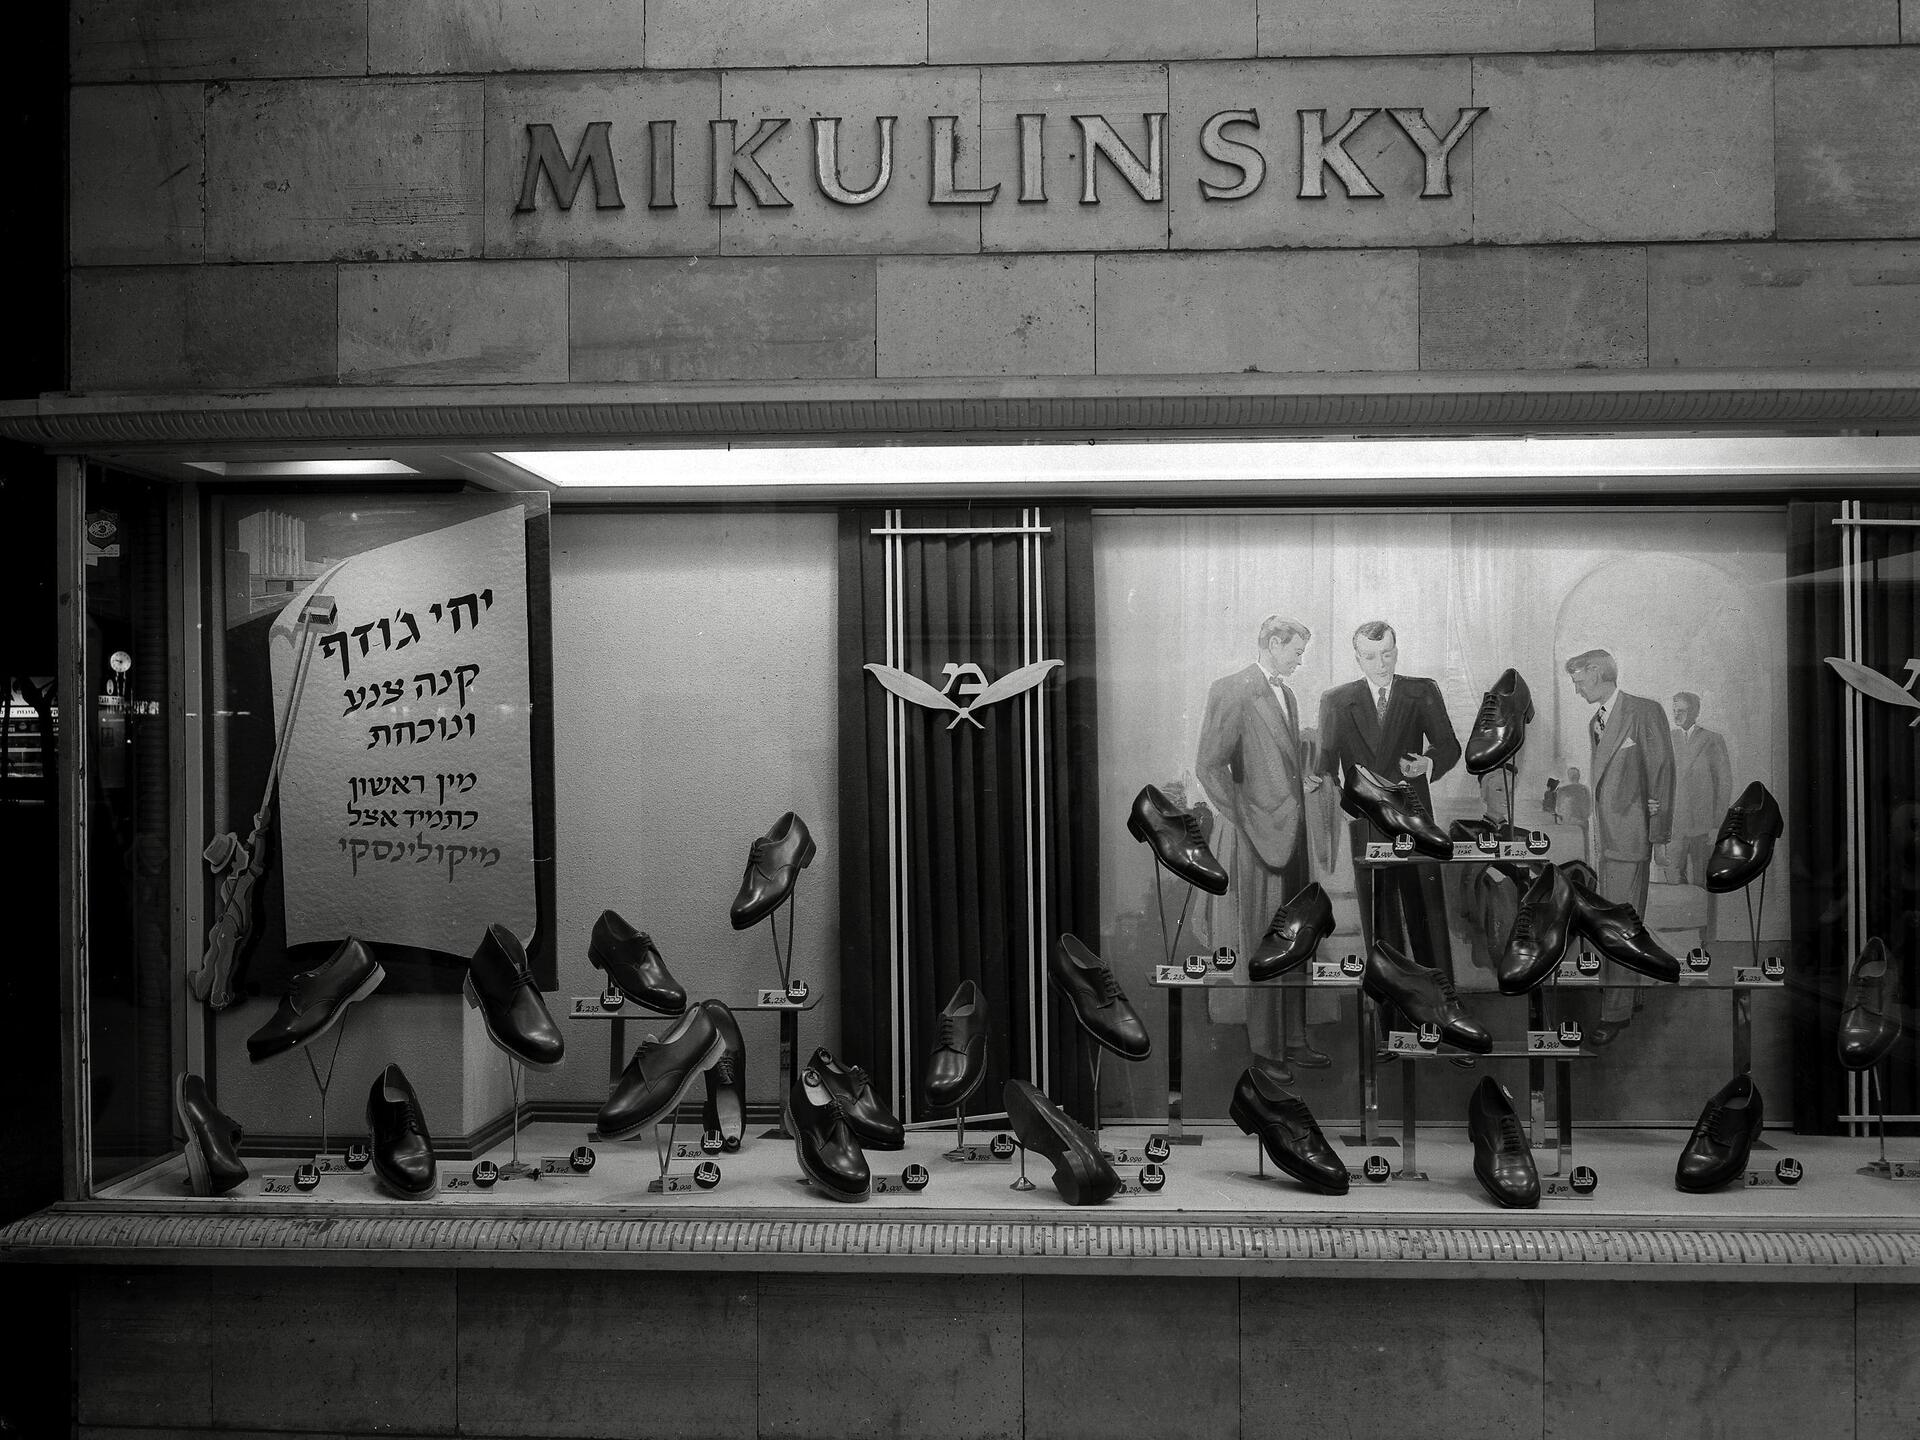 חנות מיקולינסקי בנחלת בנימין בתל אביב, 1949